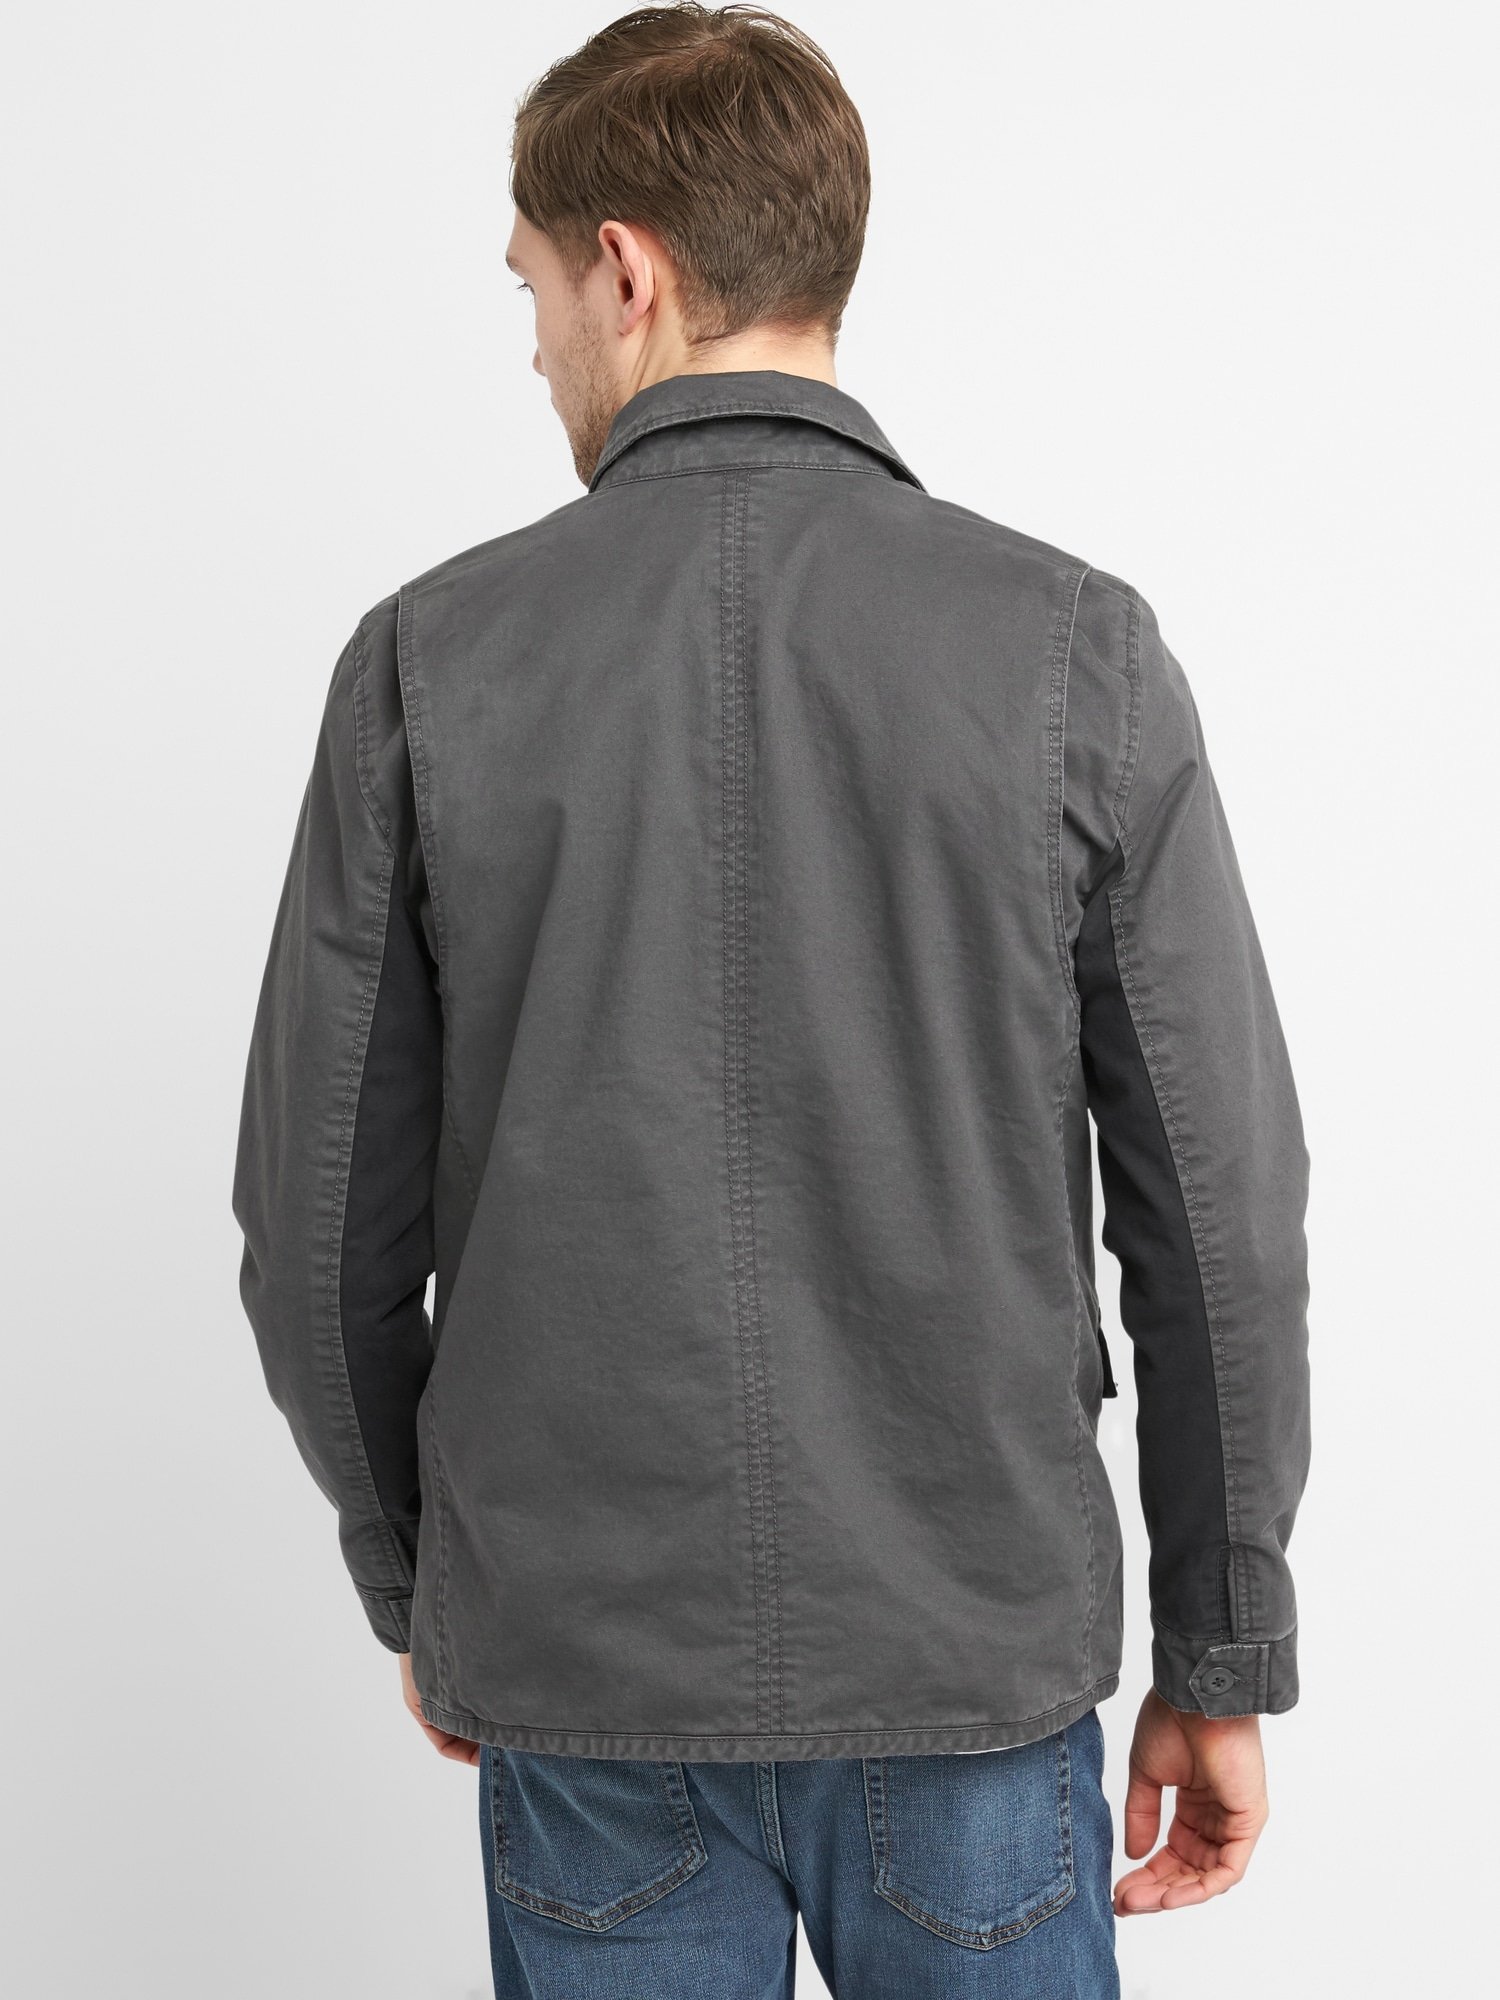 İç astarı desenli cepli ceket product image